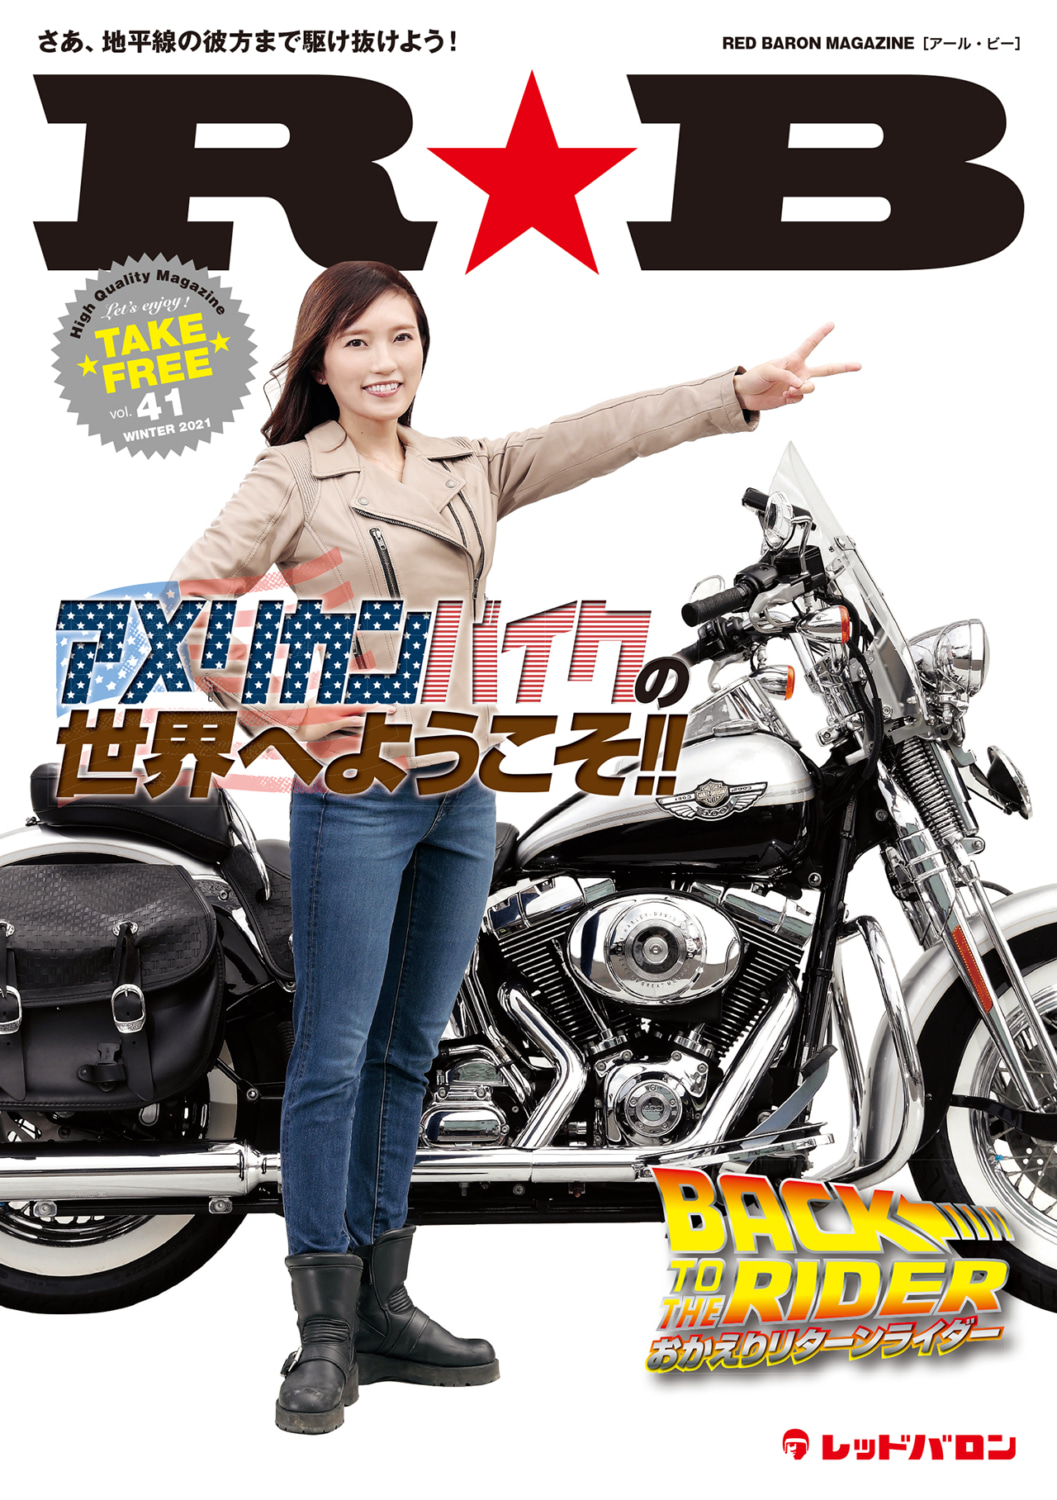 レッドバロンのフリーマガジン R B Vol 41 最新号発行 バイクニュース タンデムスタイル